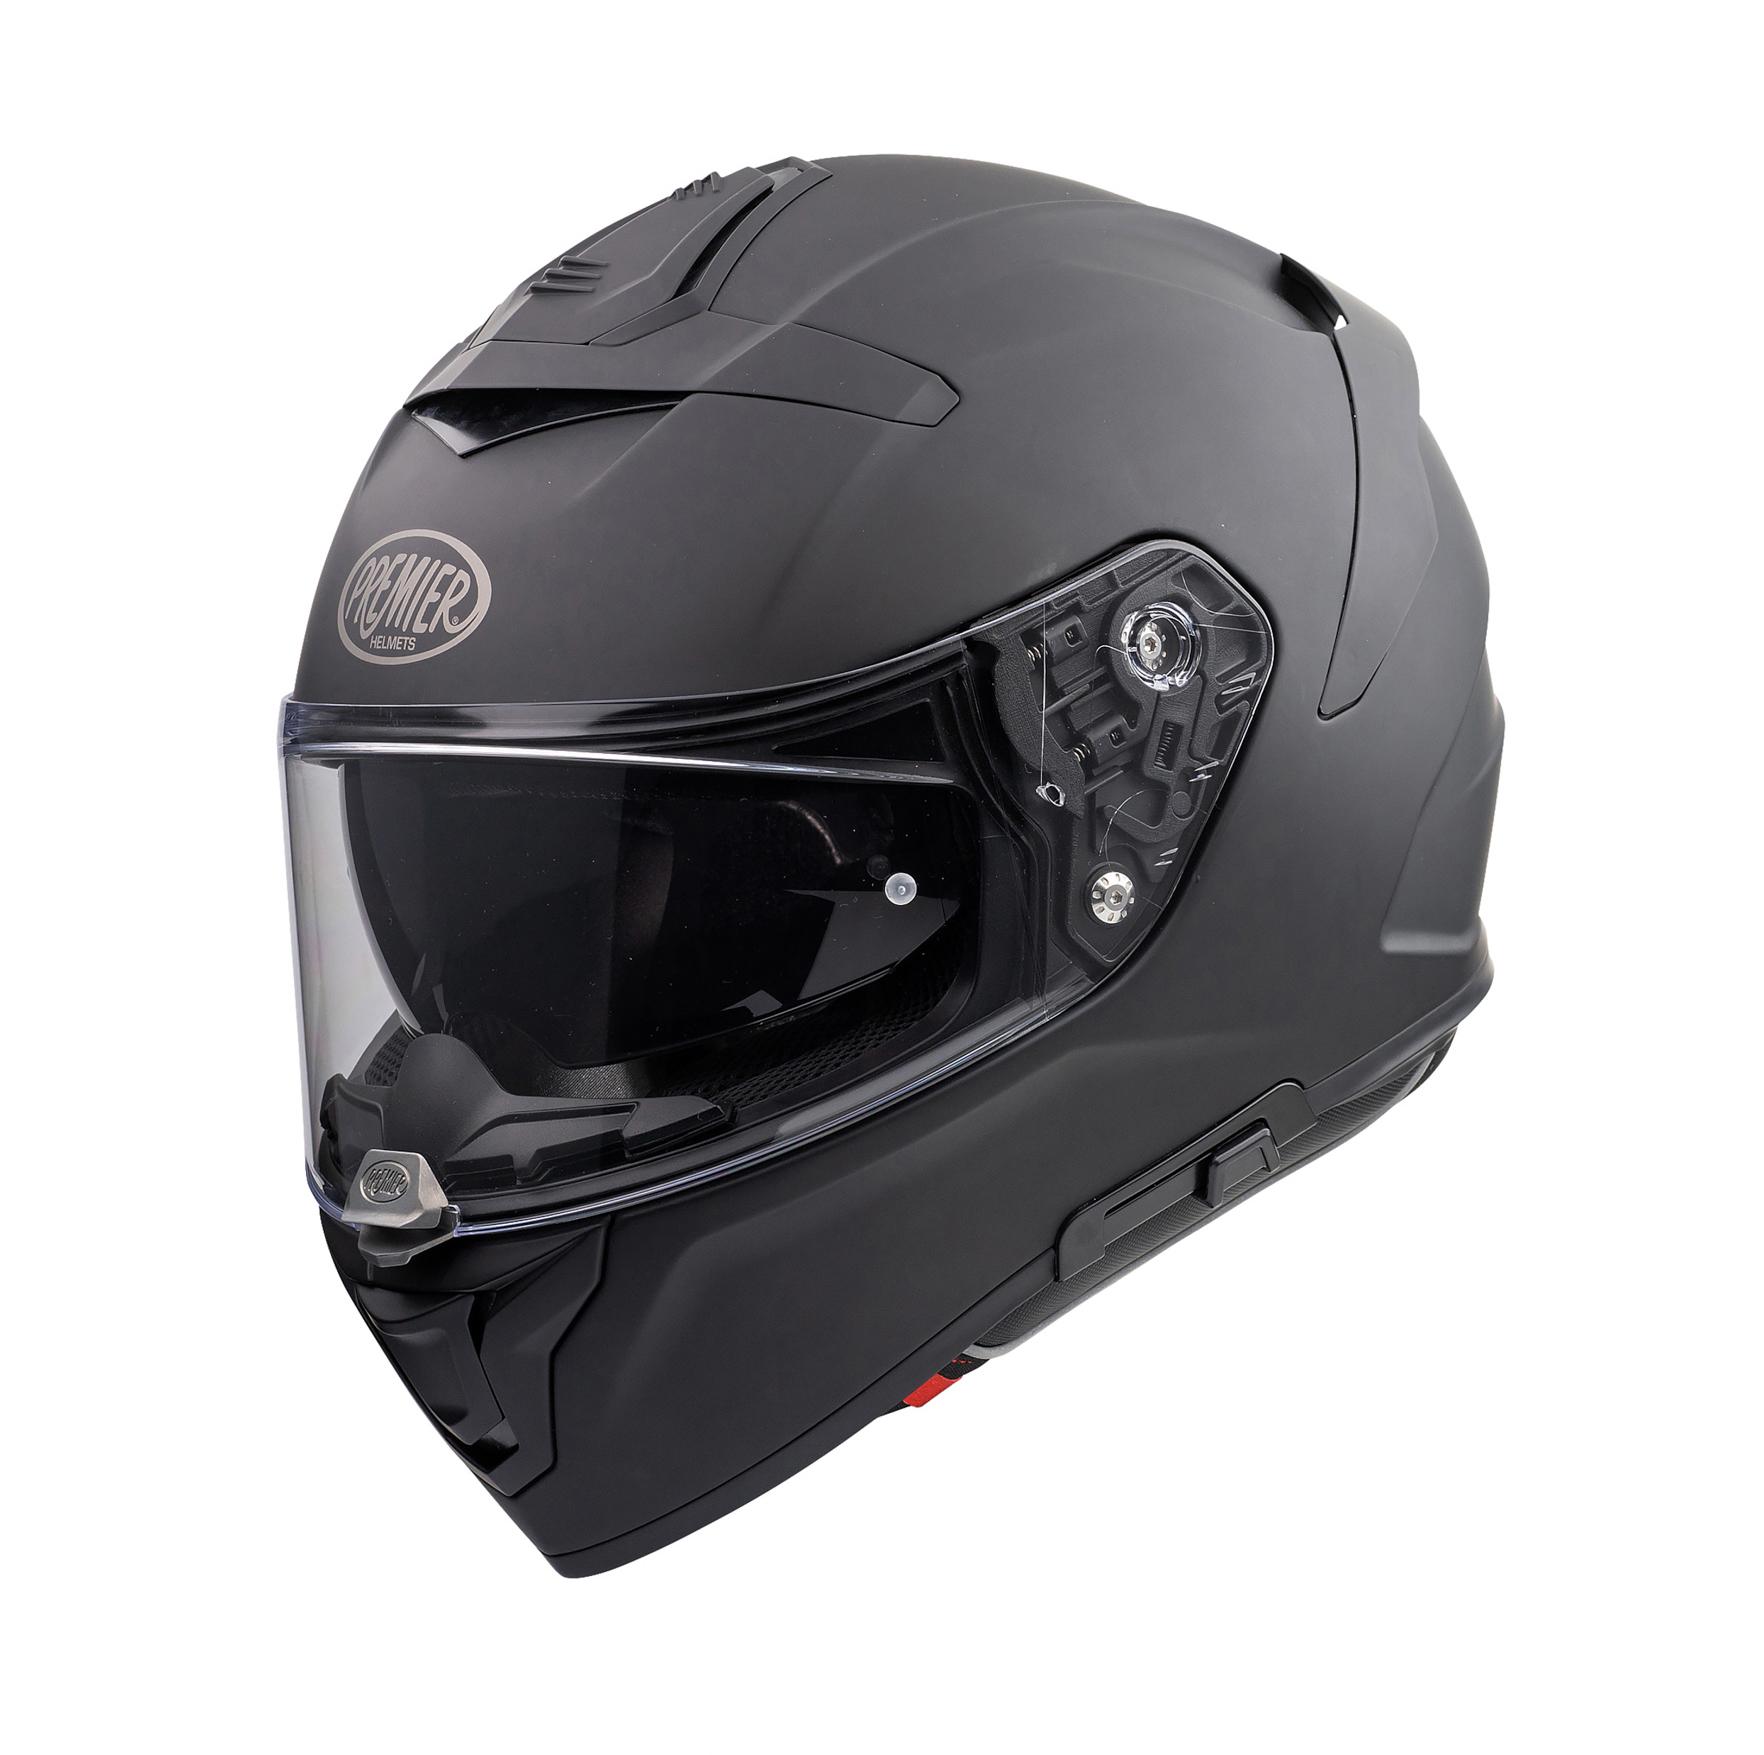 Premier Devil U9 Full Face Motorcycle Helmet - Matt Black, Xl